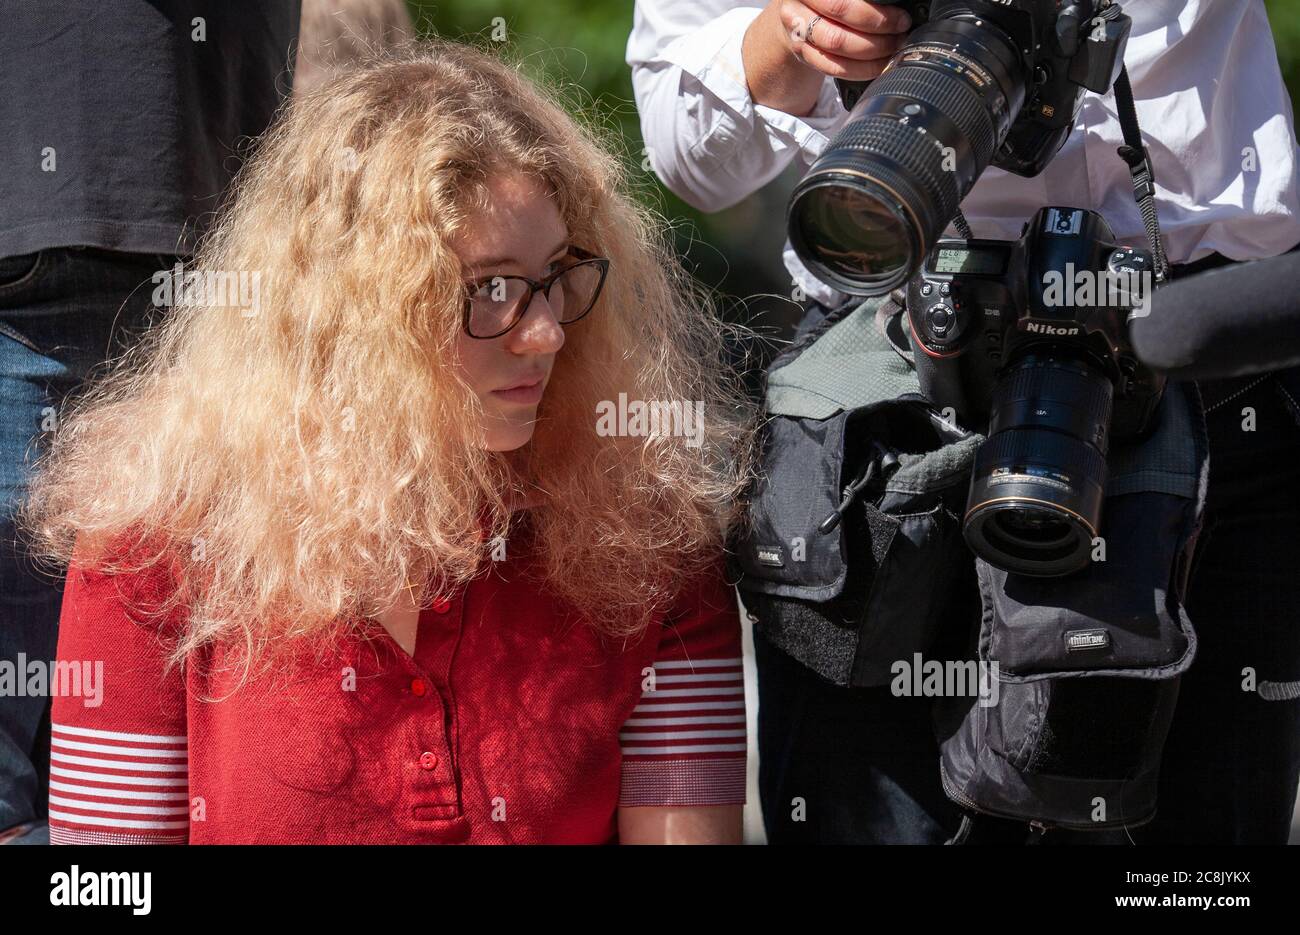 Une jeune femme portant des lunettes se trouve aux appareils photo d'un photographe de presse tandis que les fans et les médias attendent l'arrivée de Johnny Depp devant le tribunal. Banque D'Images